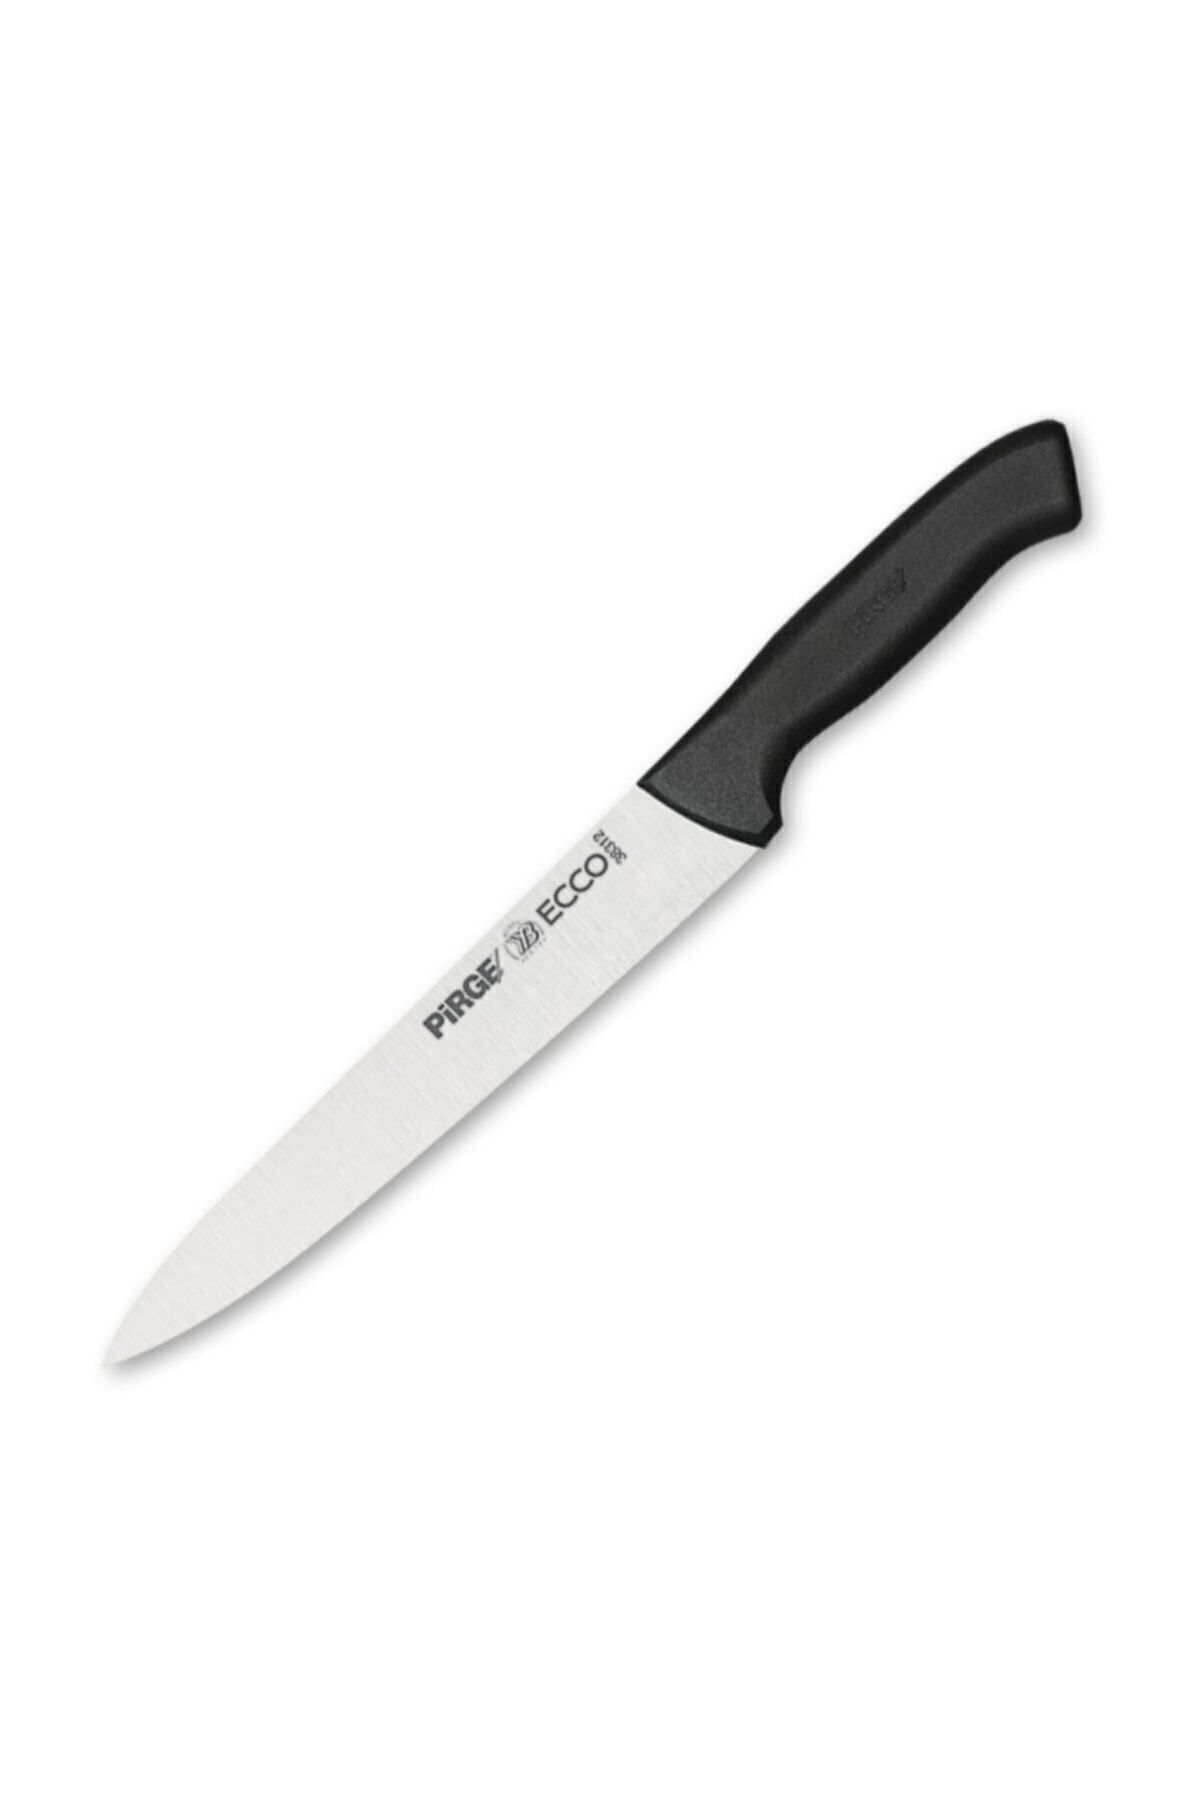 Pirge Ecco Dilimleme Bıçağı 18 Cm 38312